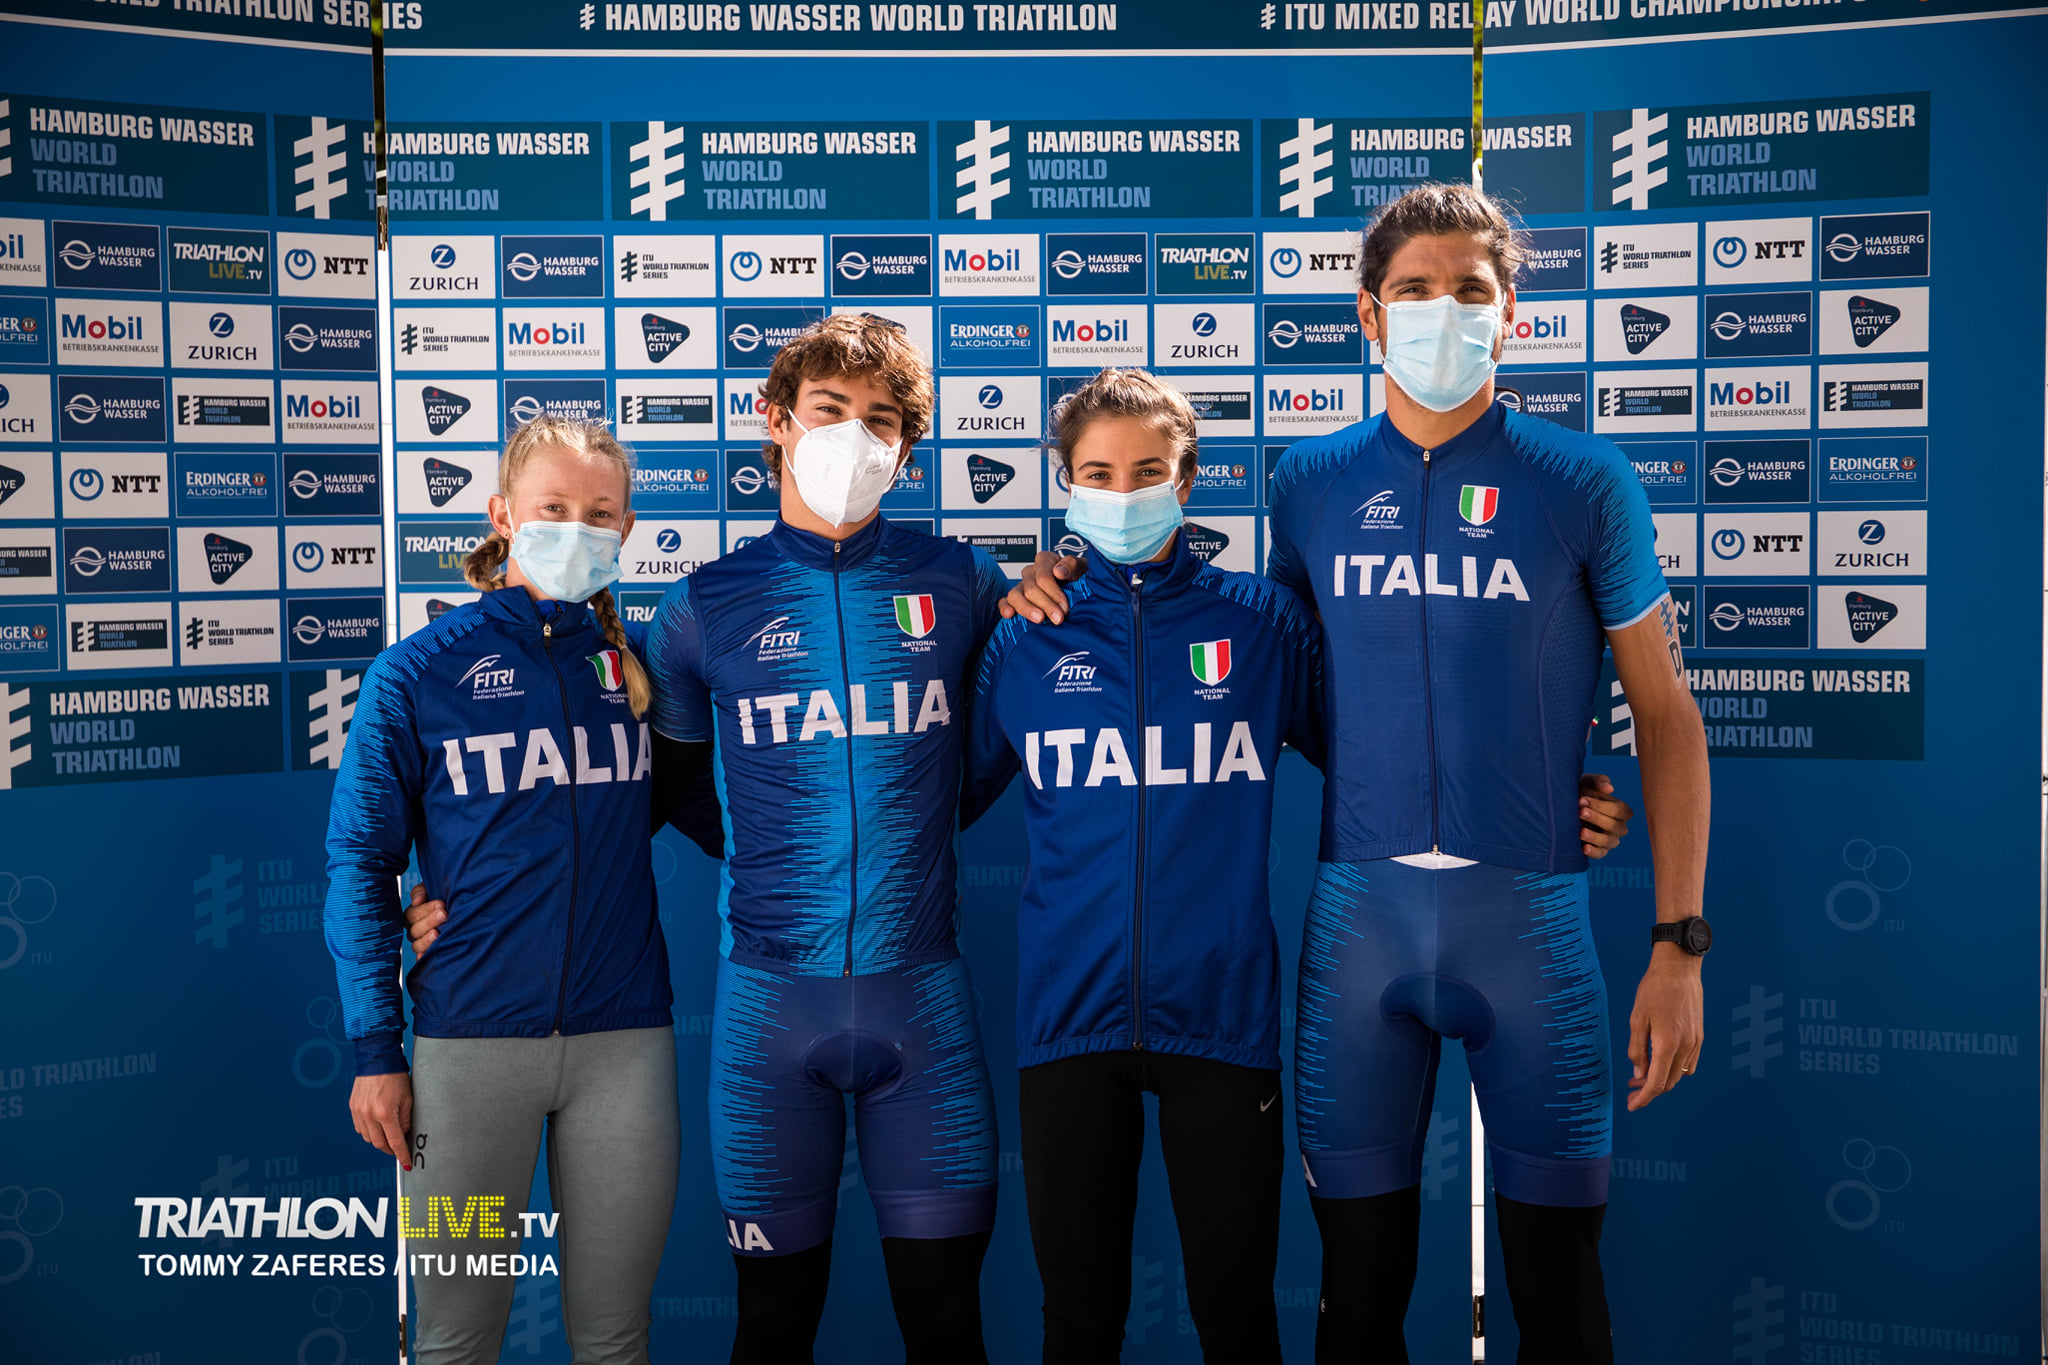 Mondiali Mixed Relay: domina la Francia, l'Italia è decima